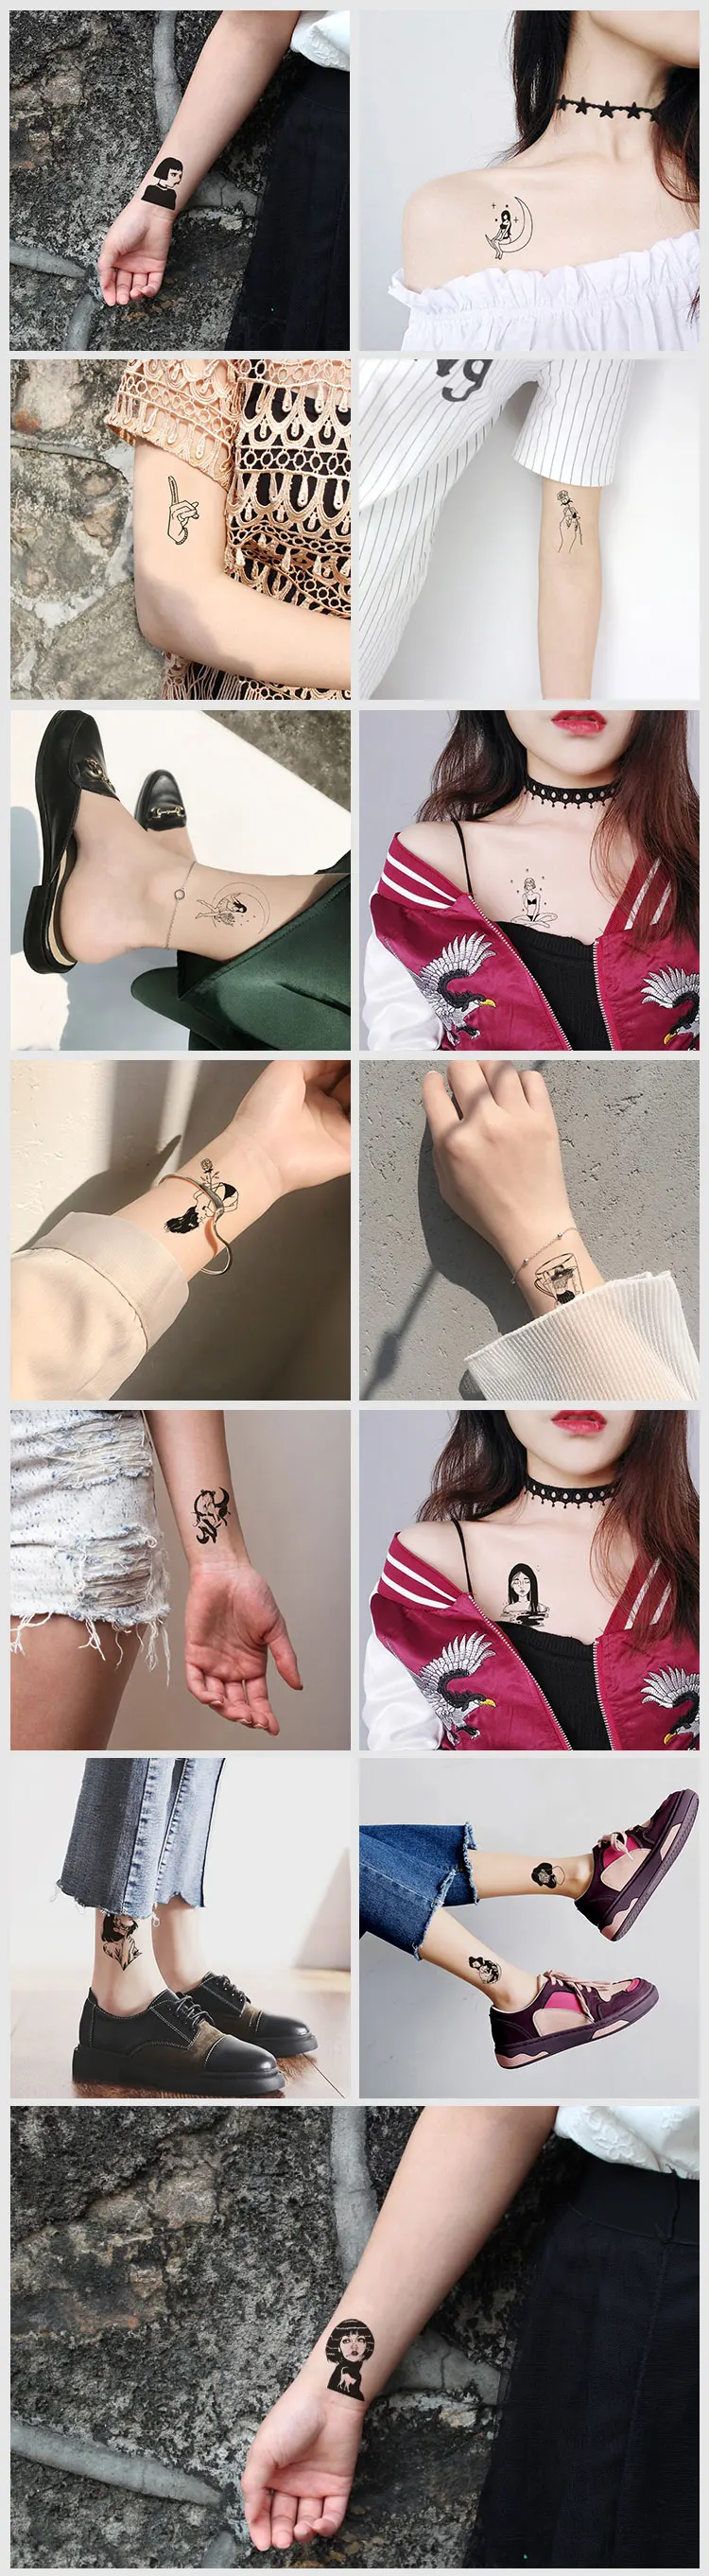 CC набор различных черный белый маленькая татуировка темная серия девушка дизайн уникальный временная татуировка стикер боди-арт поддельные руки тату